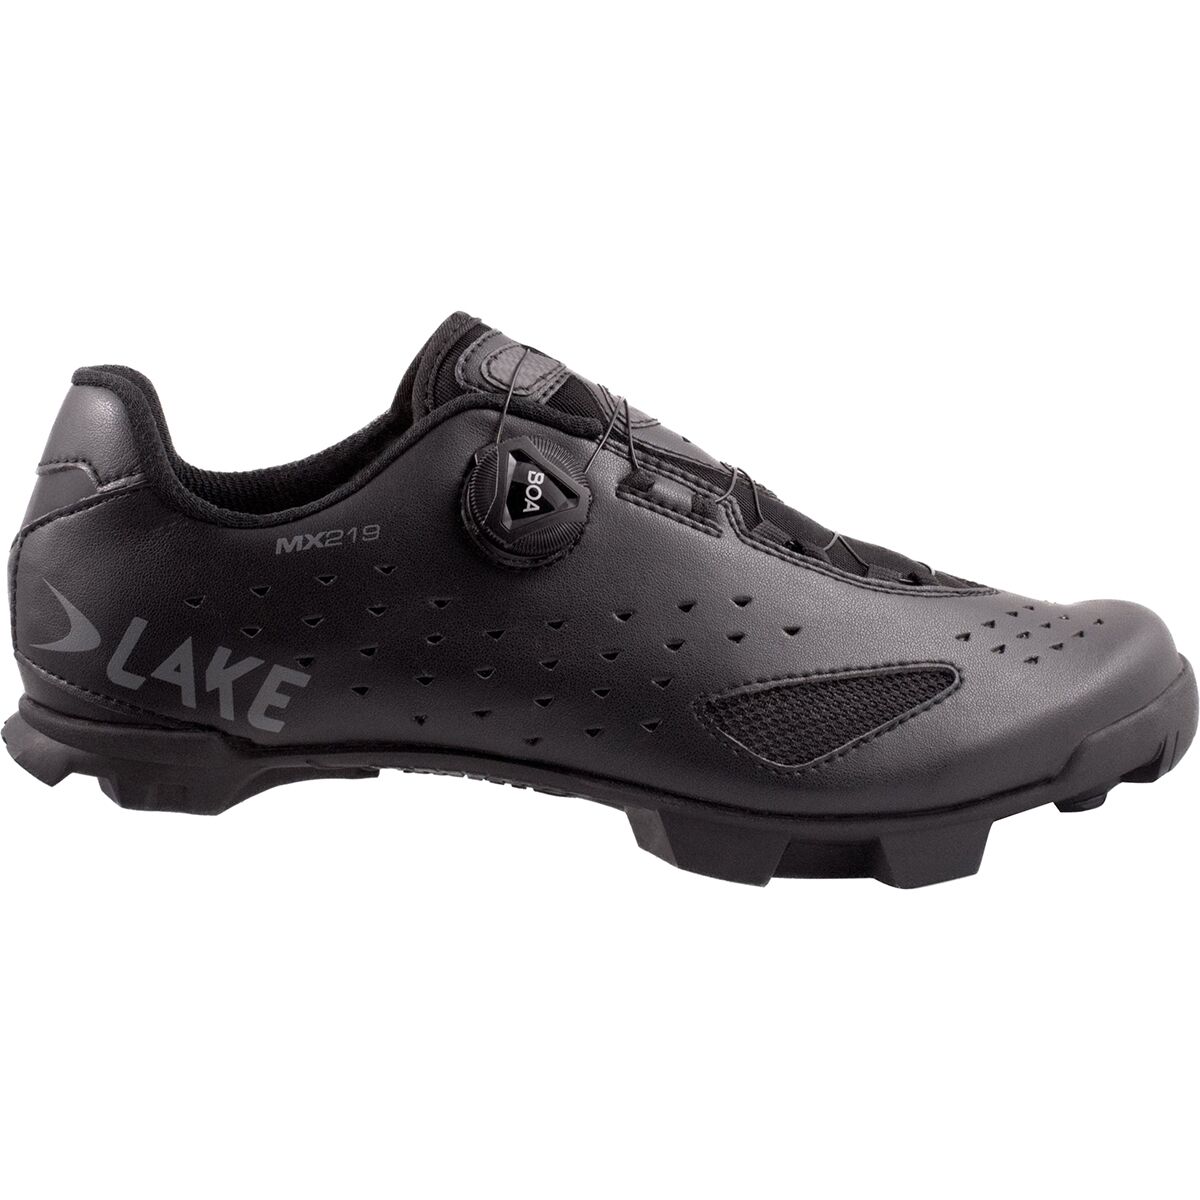 Lake MX219 Cycling Shoe - Men's